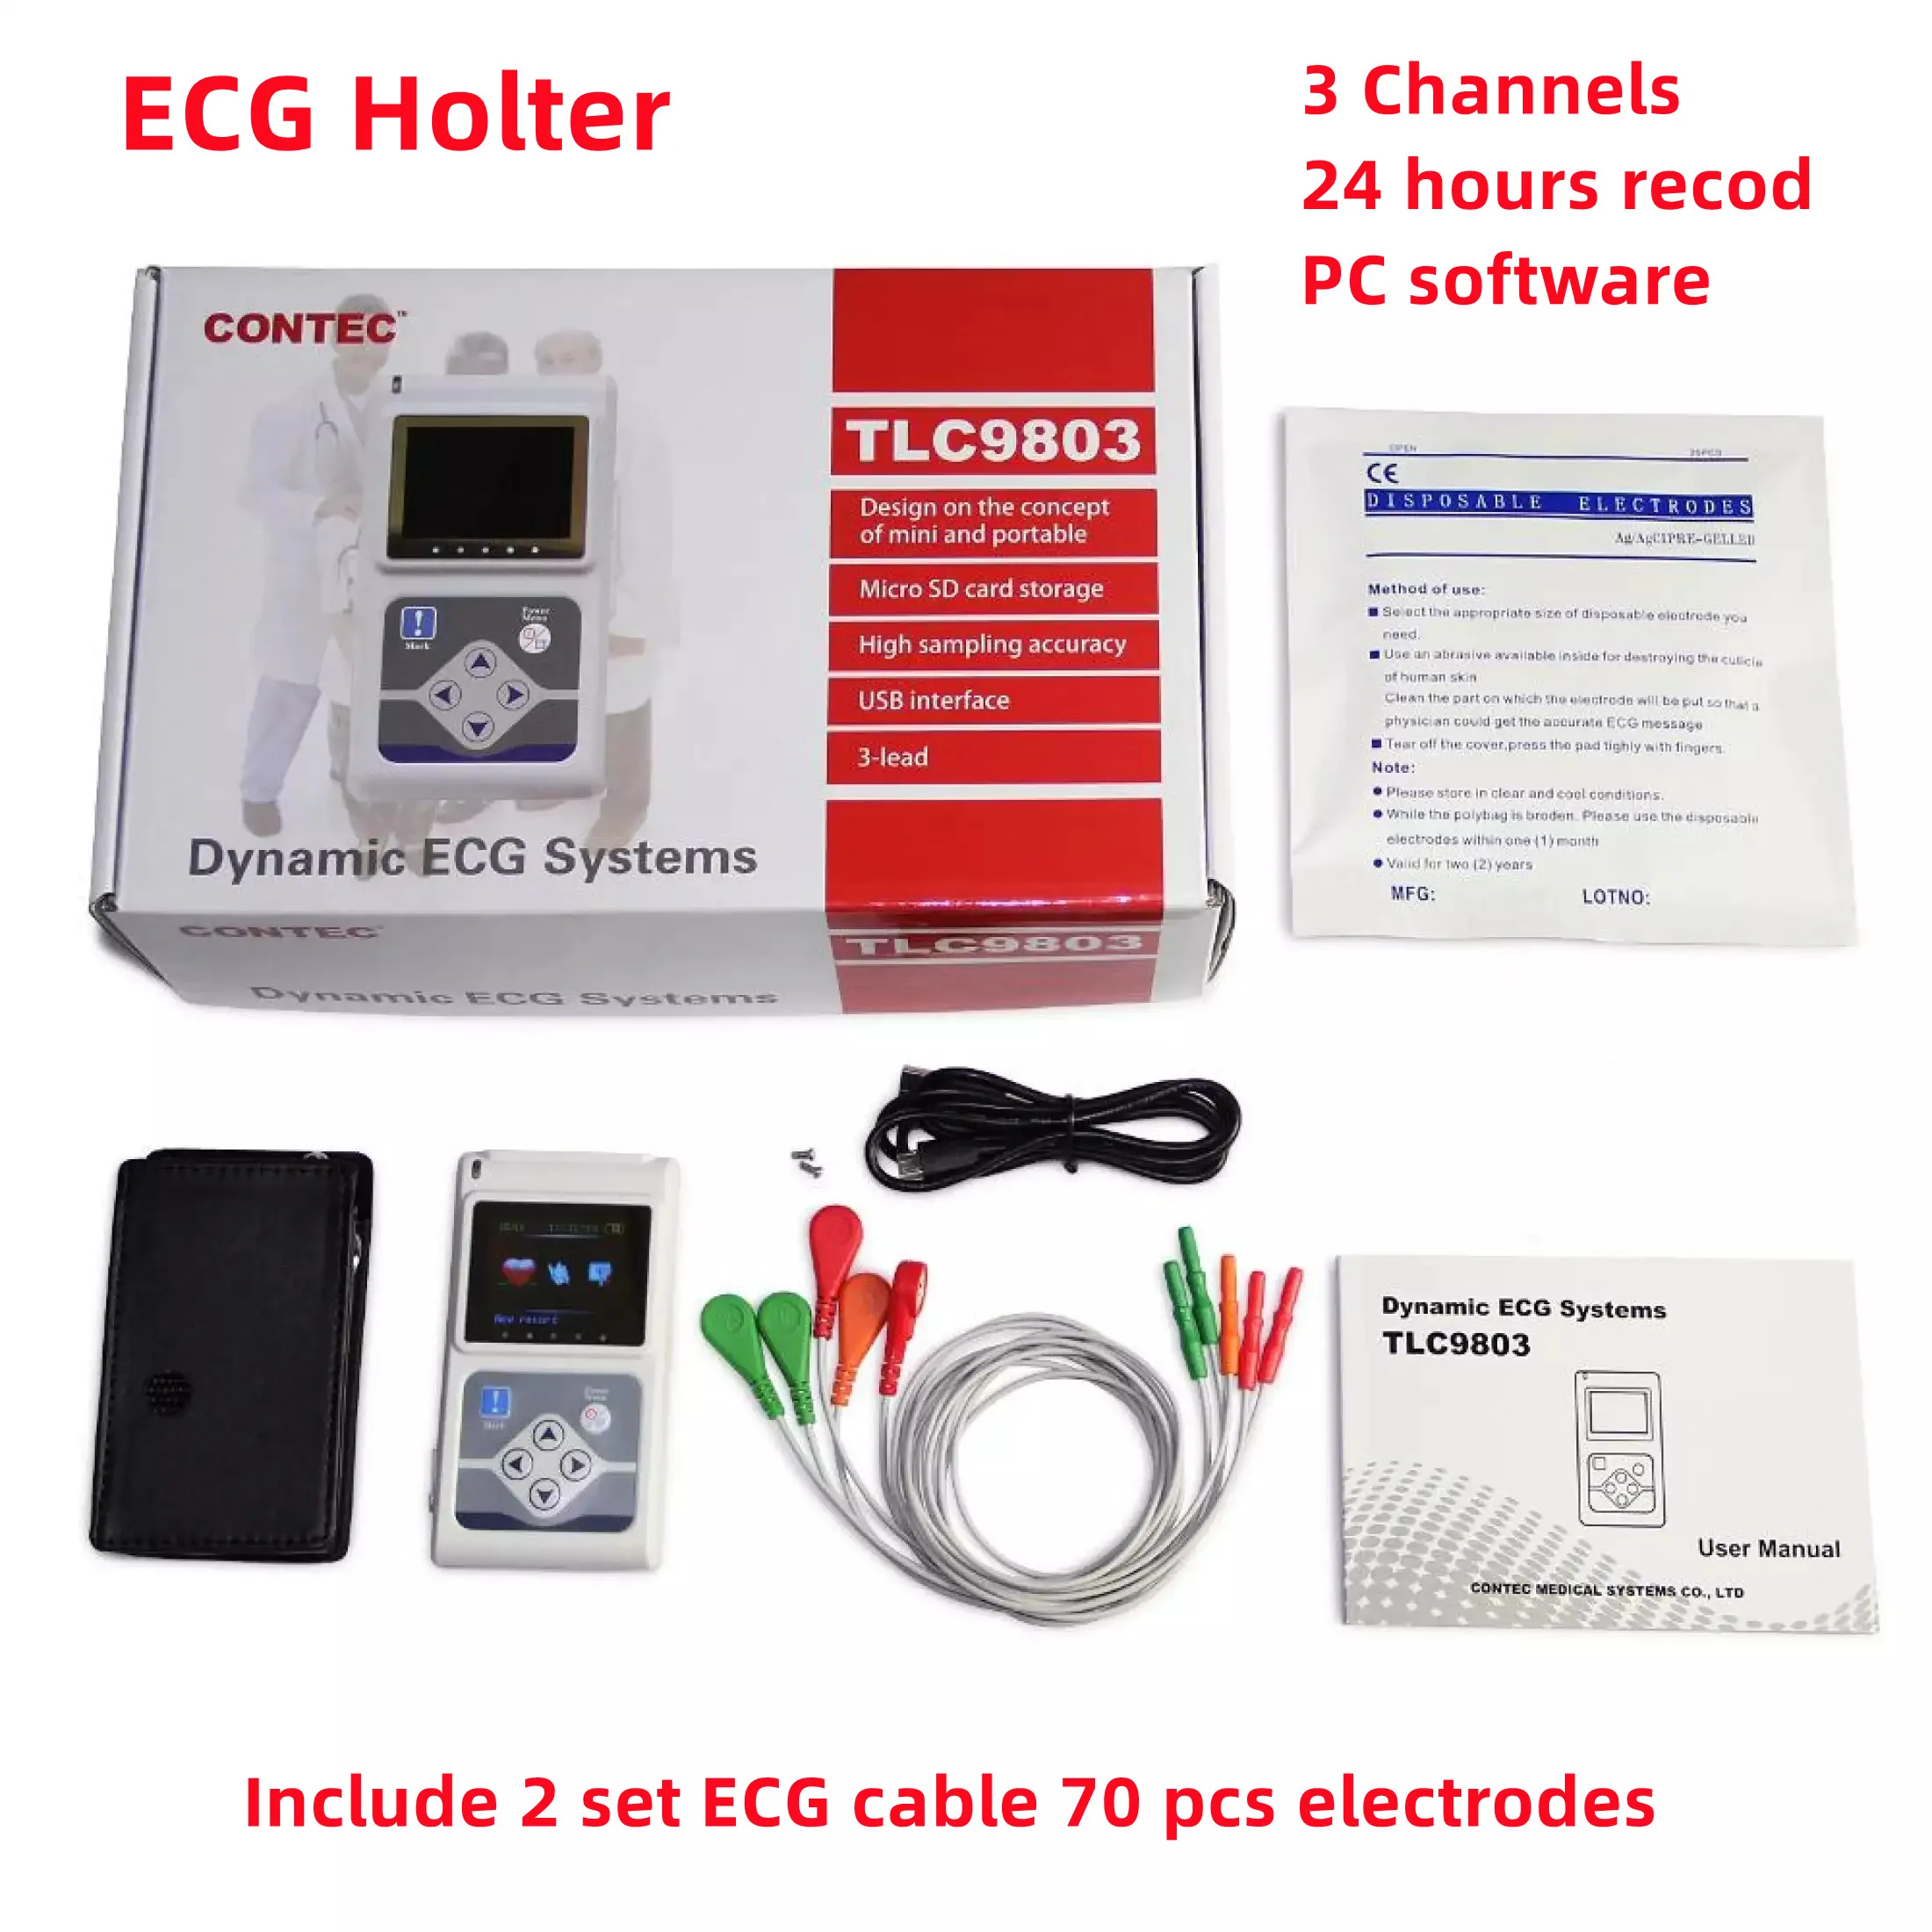 

CONTEC ECG Holter динамическая система контроля ЭКГ 24-часовой регистратор TLC9803 бесплатный Дополнительный свинцовый провод и электроды